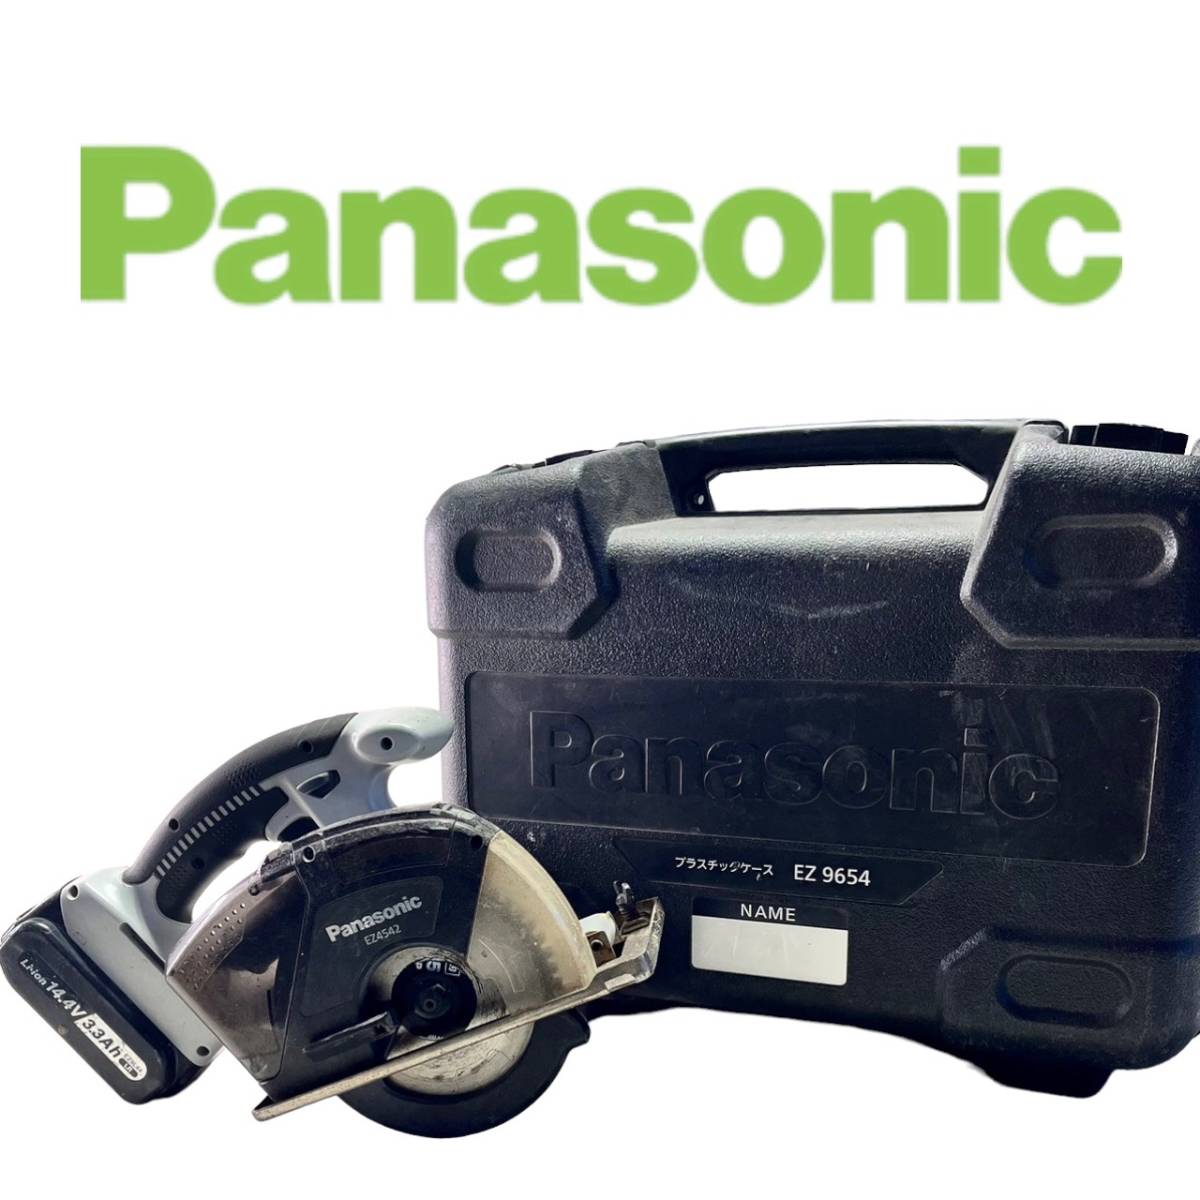 2021新商品 Panasonic パナソニック 充電バンドソー14.4V5Ahセット EZ45A5LJ2F-B